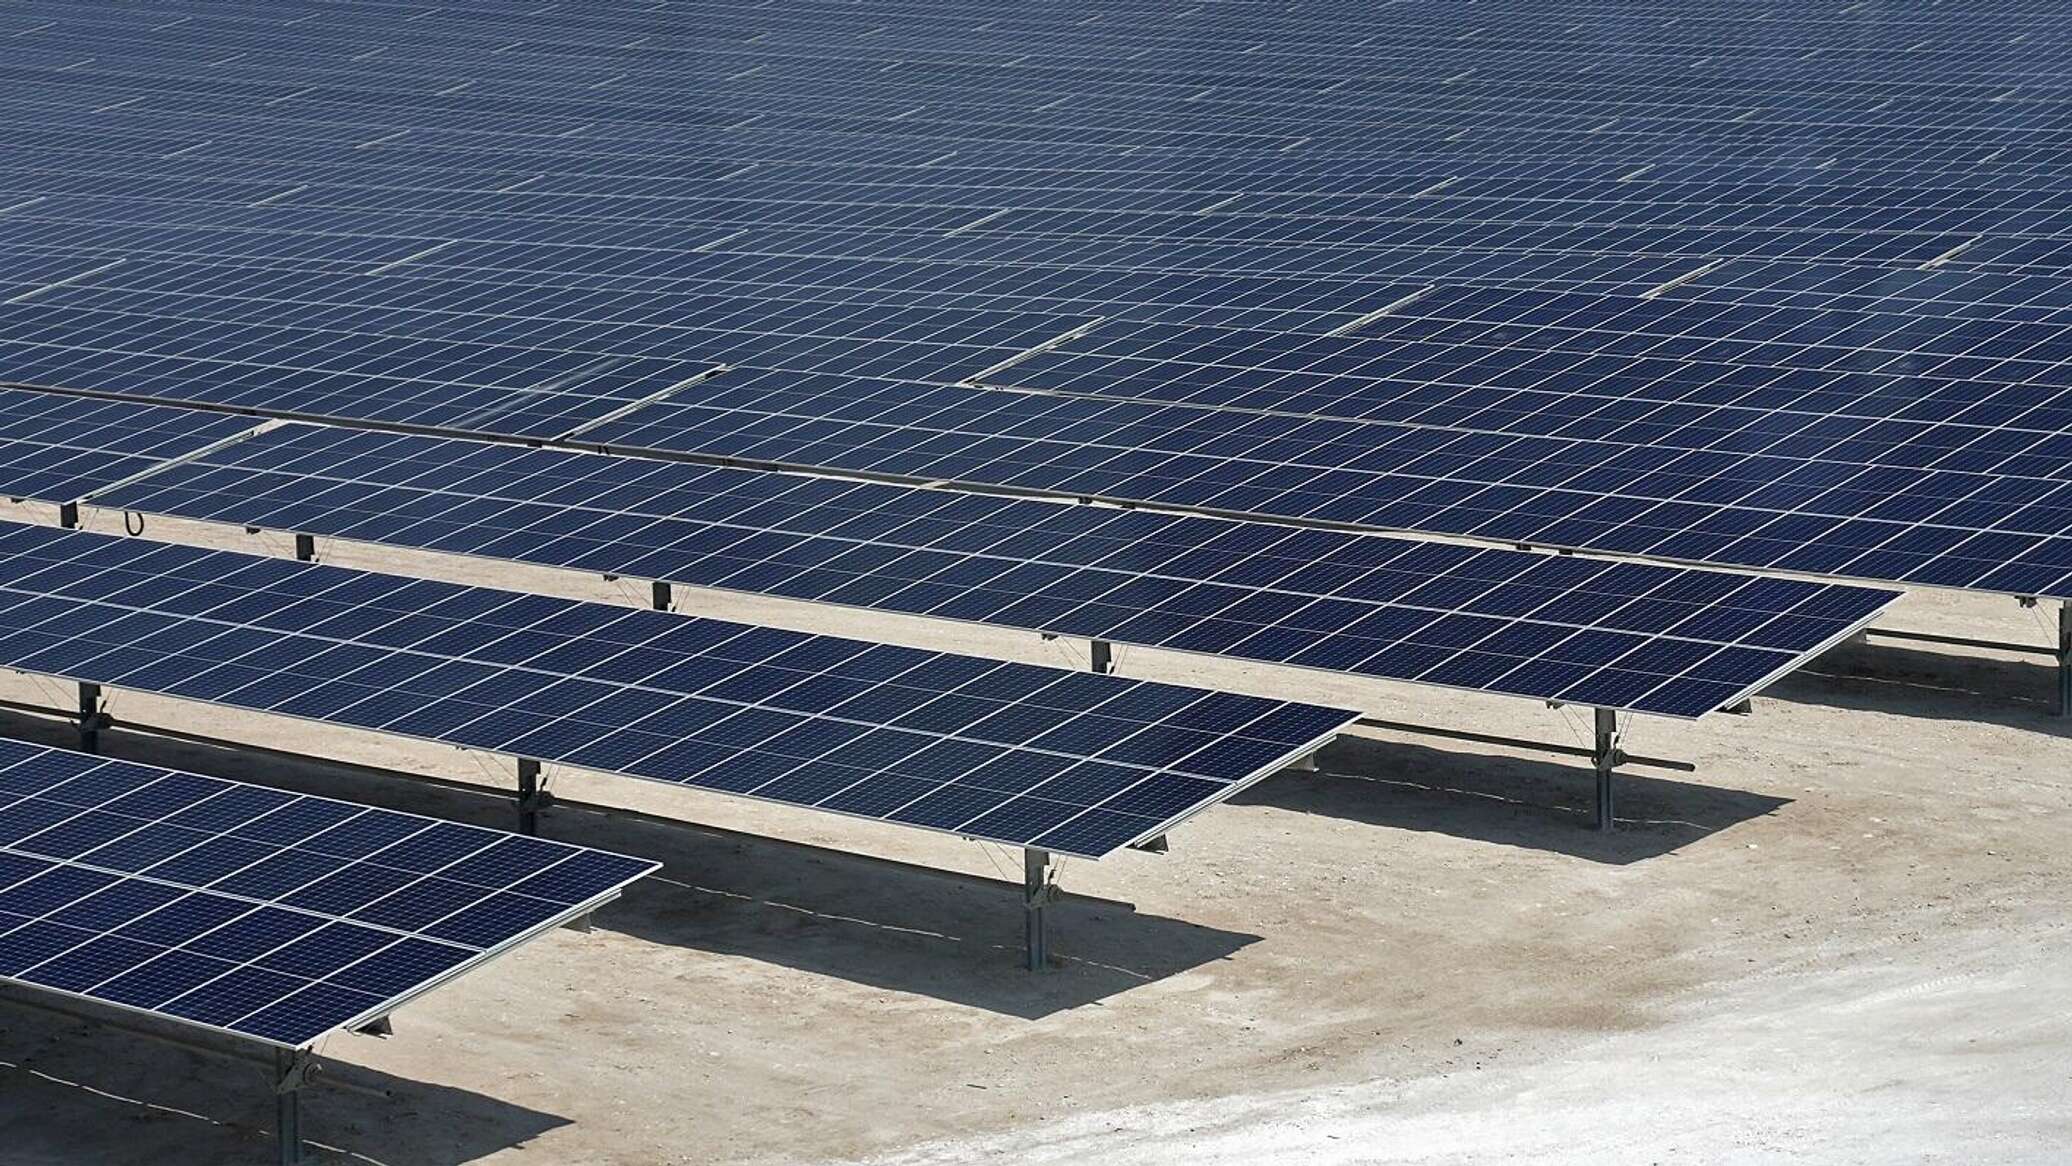 أكبر محطة طاقة شمسية على مستوى العالم "ضمن موقع واحد" في دولة عربية... صور وفيديو